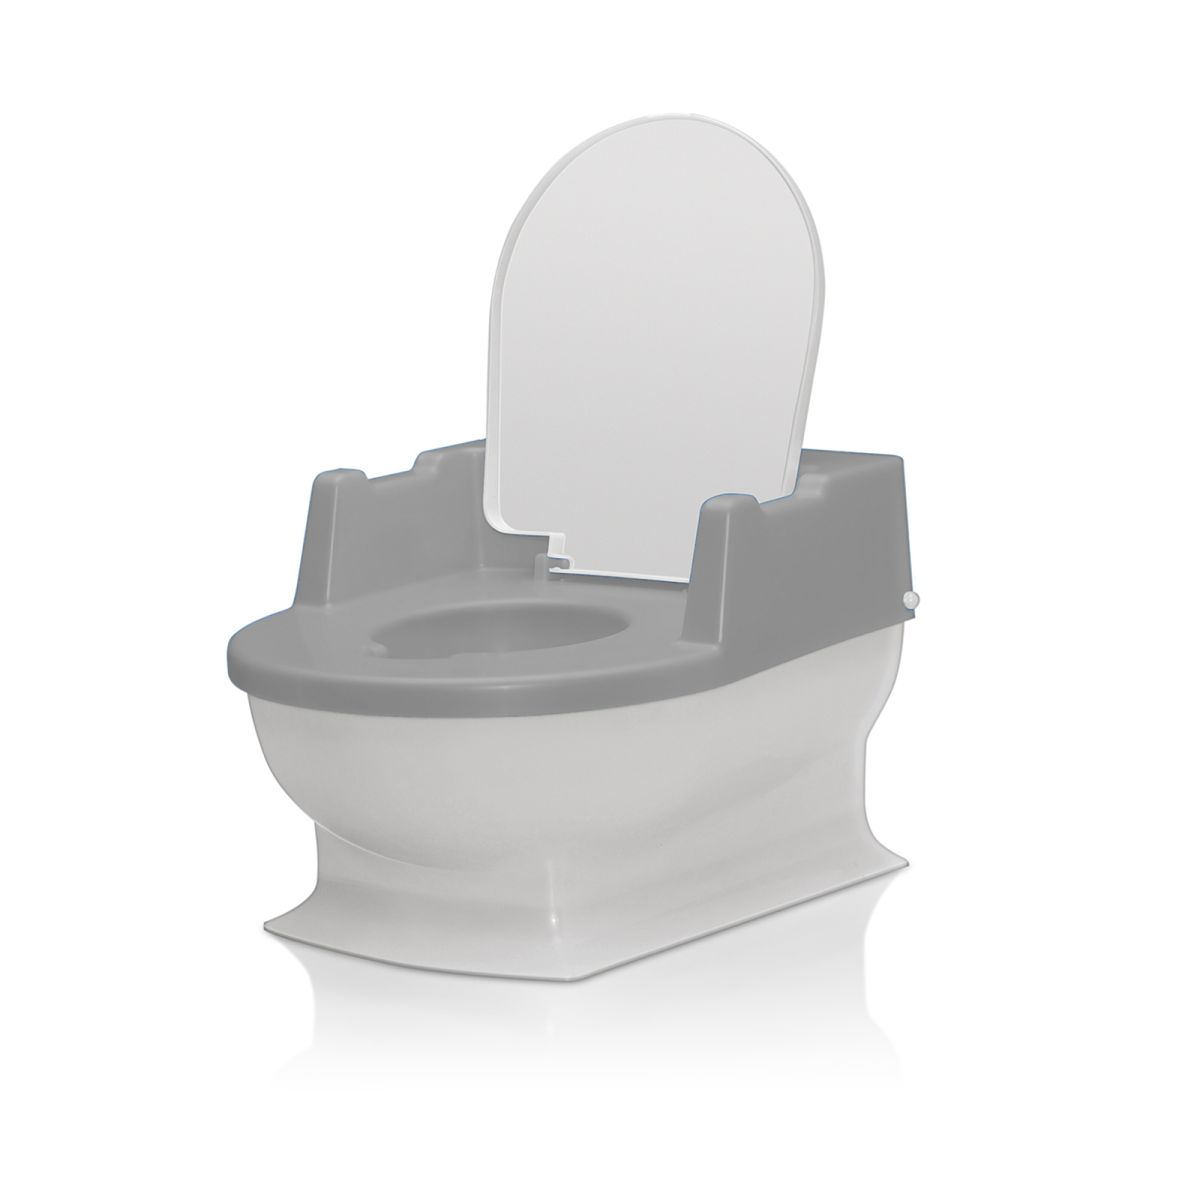 Reer mini toilet Sitzfritz wit/grijs